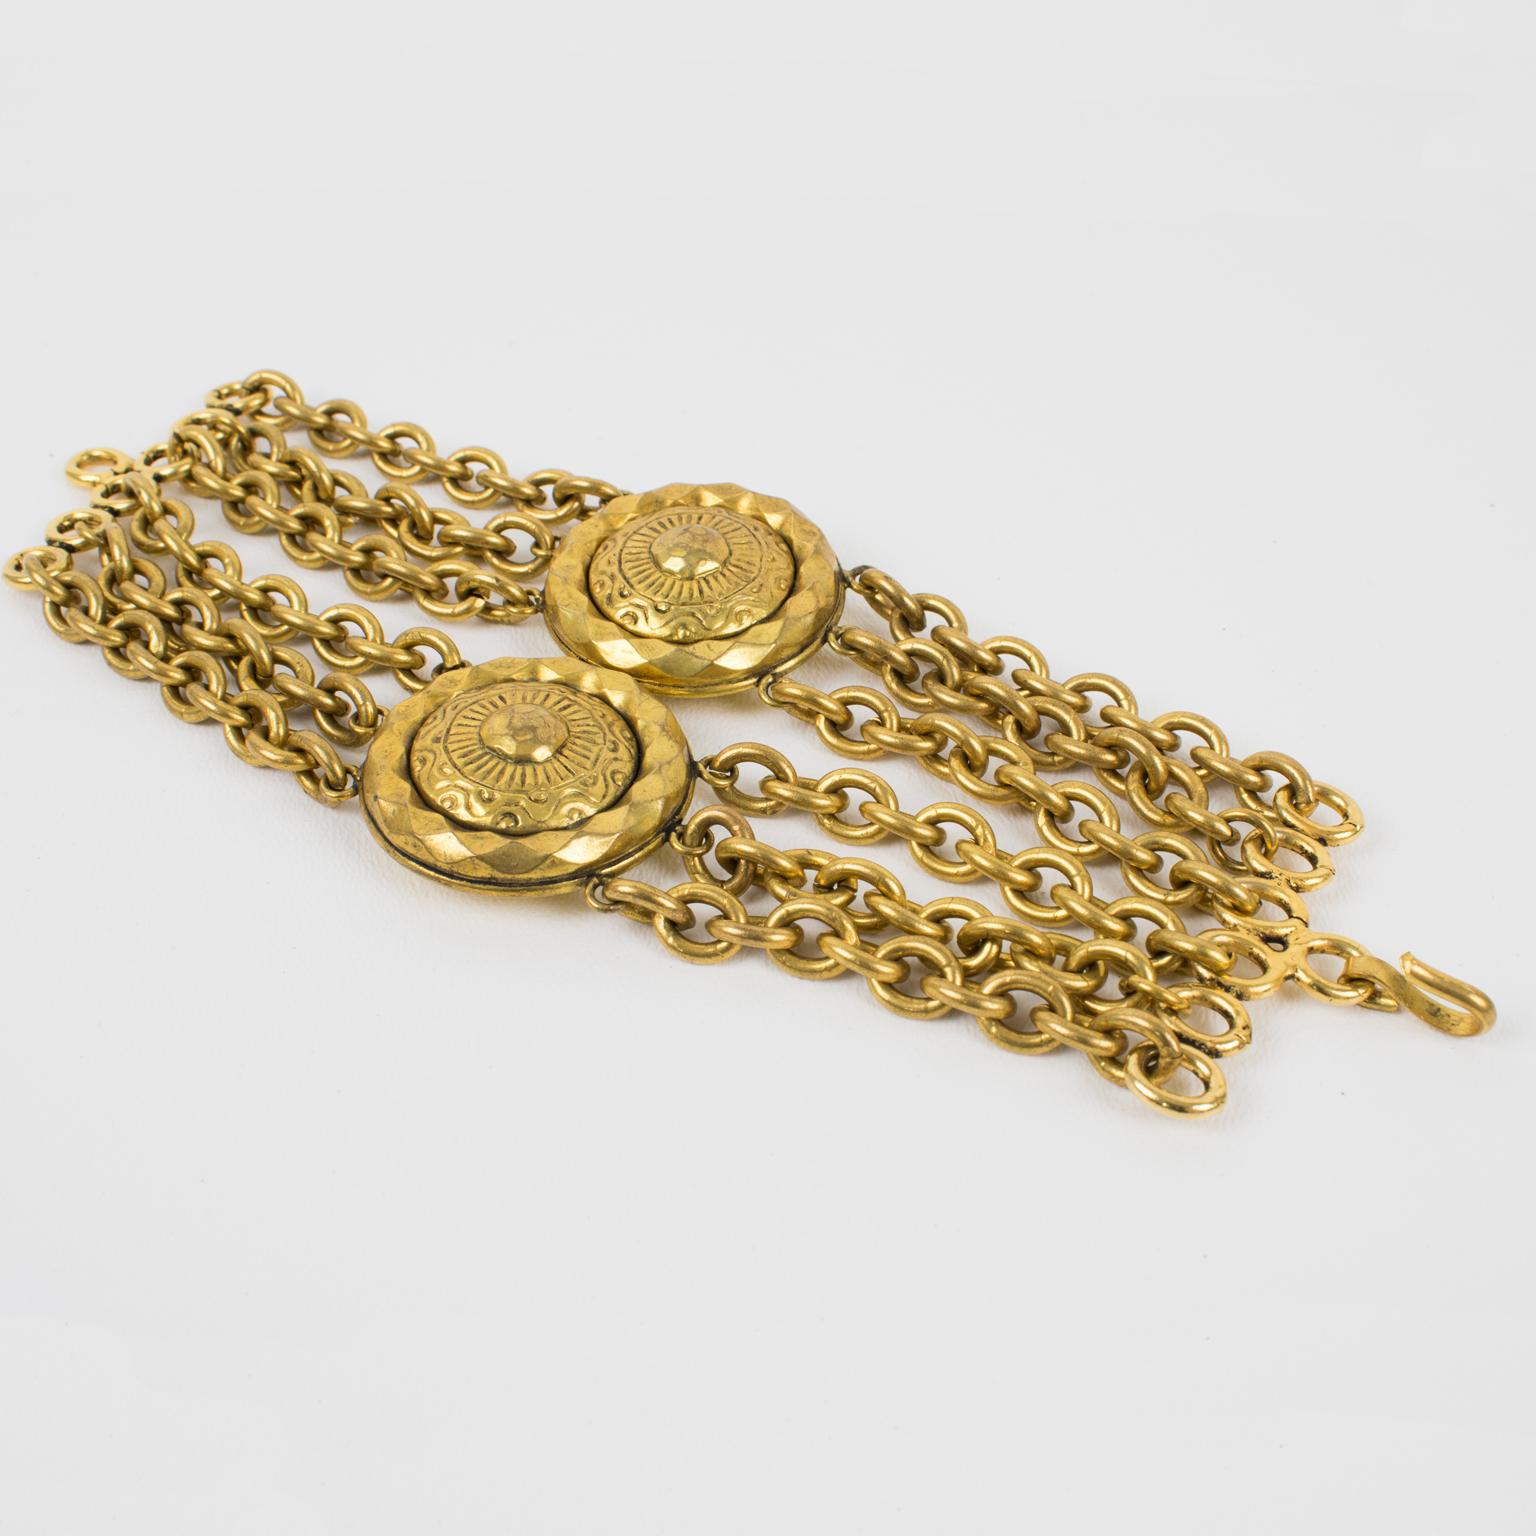 Dieses atemberaubende Mercedes Robirosa Paris Gliederarmband zeichnet sich durch ein antik vergoldetes Metall-Mehrketten-Design mit einer massiven Form aus und wird durch zwei große geschnitzte Medaillons ergänzt. Das Armband ist auf der Rückseite